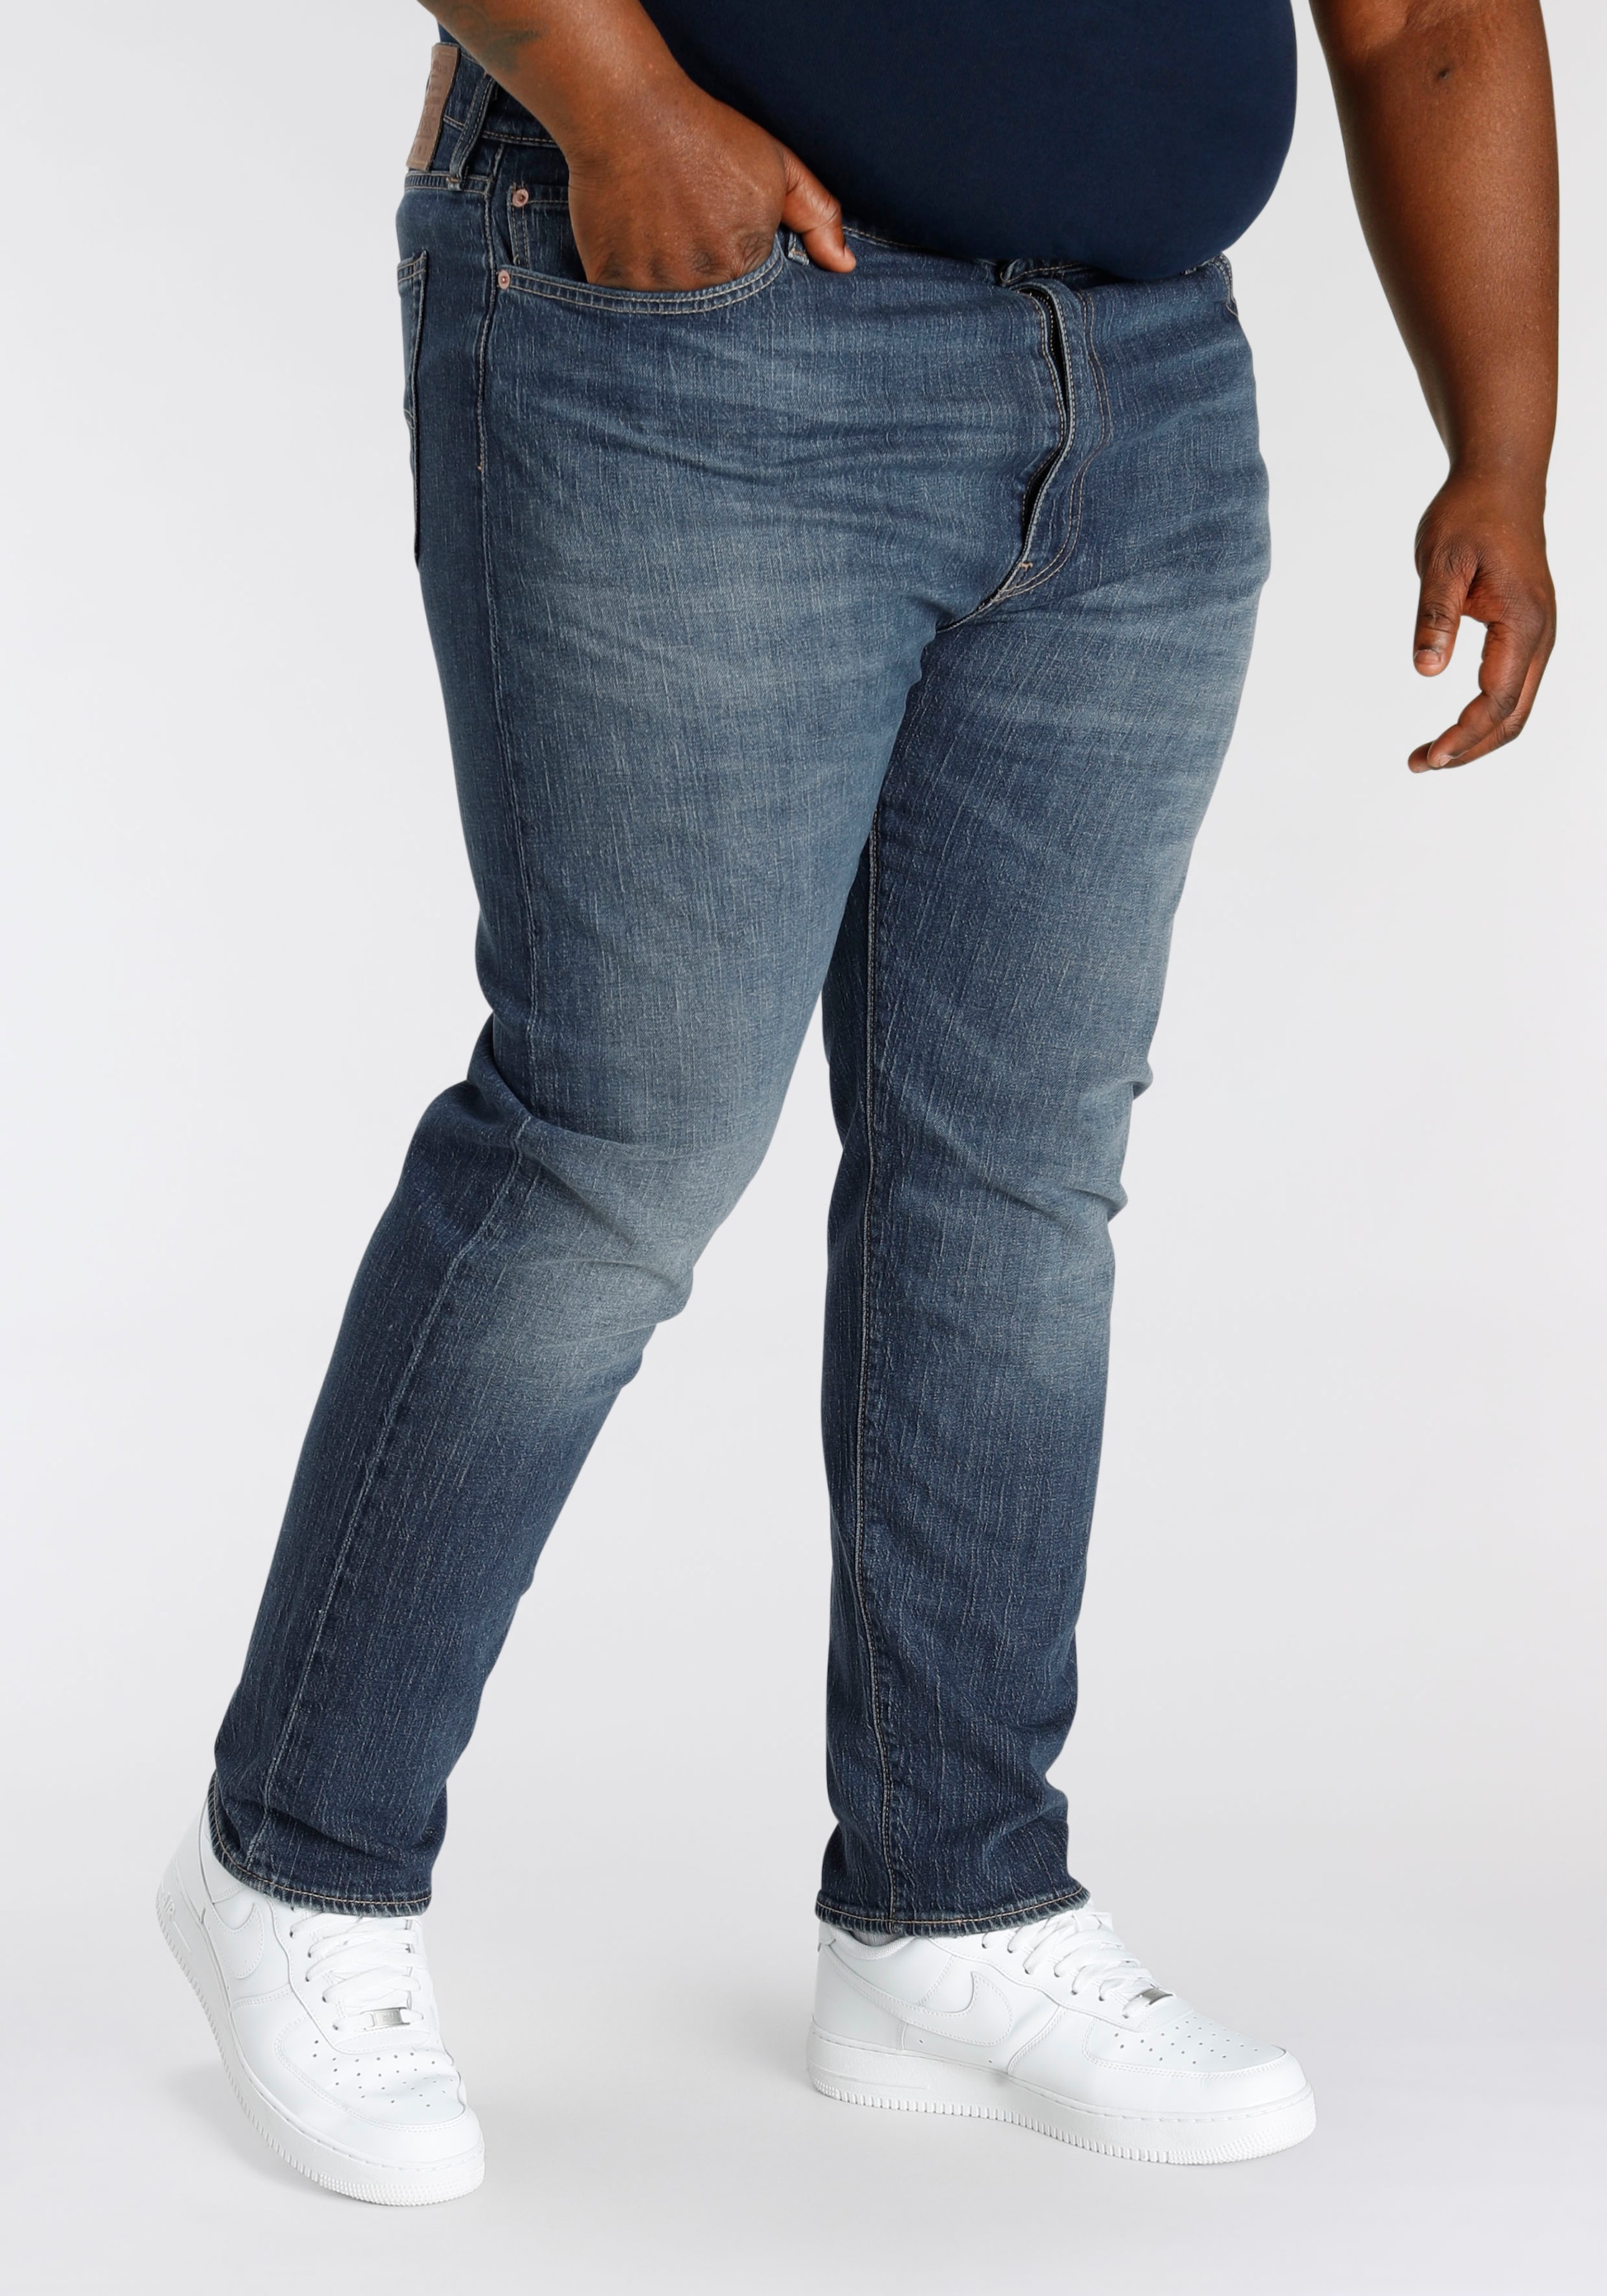 Levis Plus Tapered-fit-Jeans "502 TAPER B&T", für einen lässigen Look